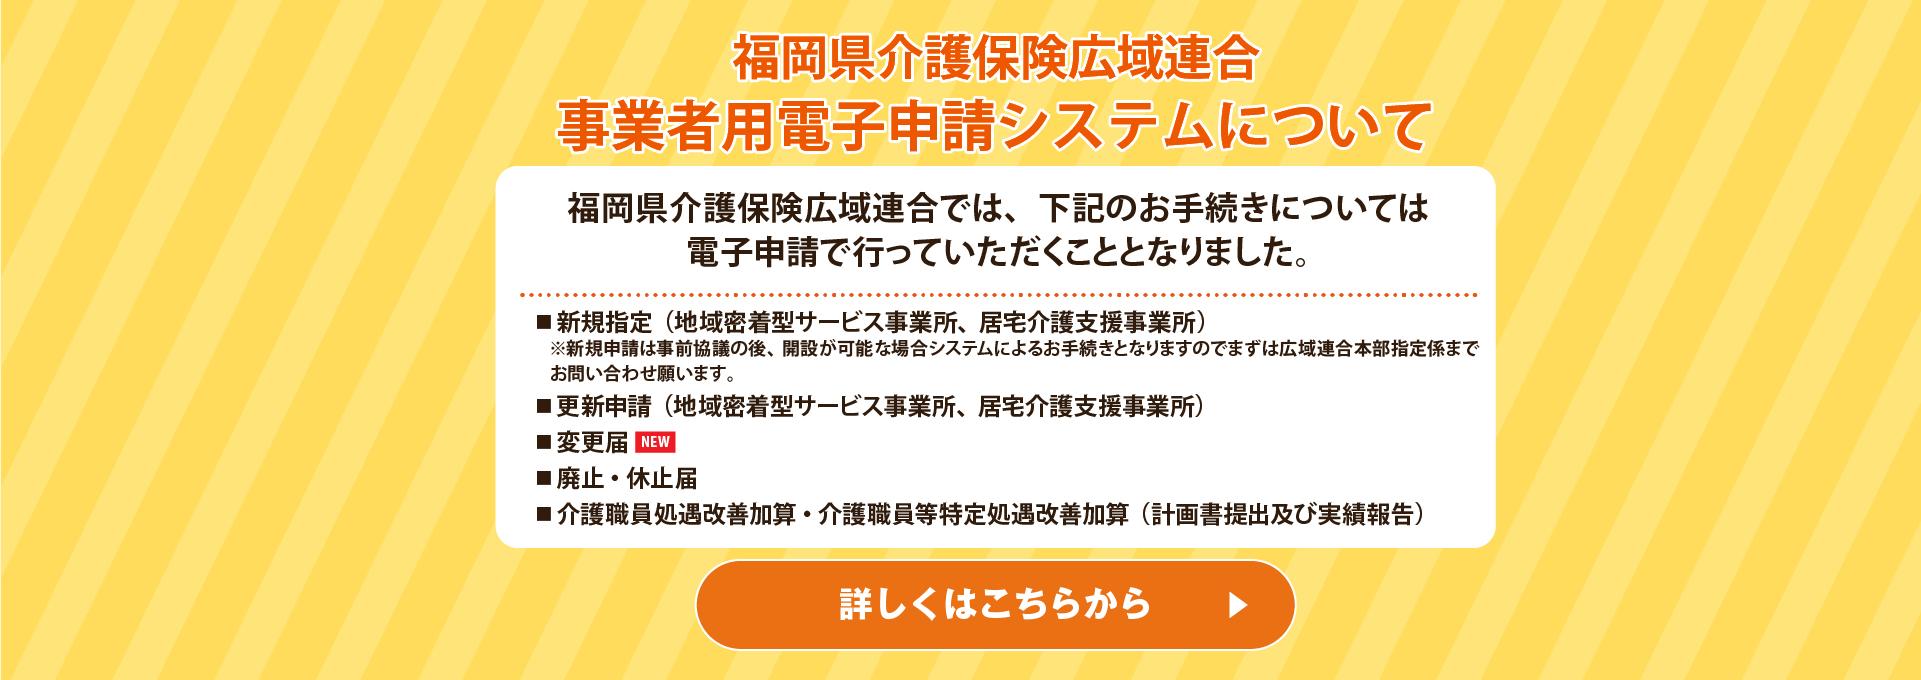 福岡県介護保険広域連合 事業者用電子申請システムについて 詳しくはこちら